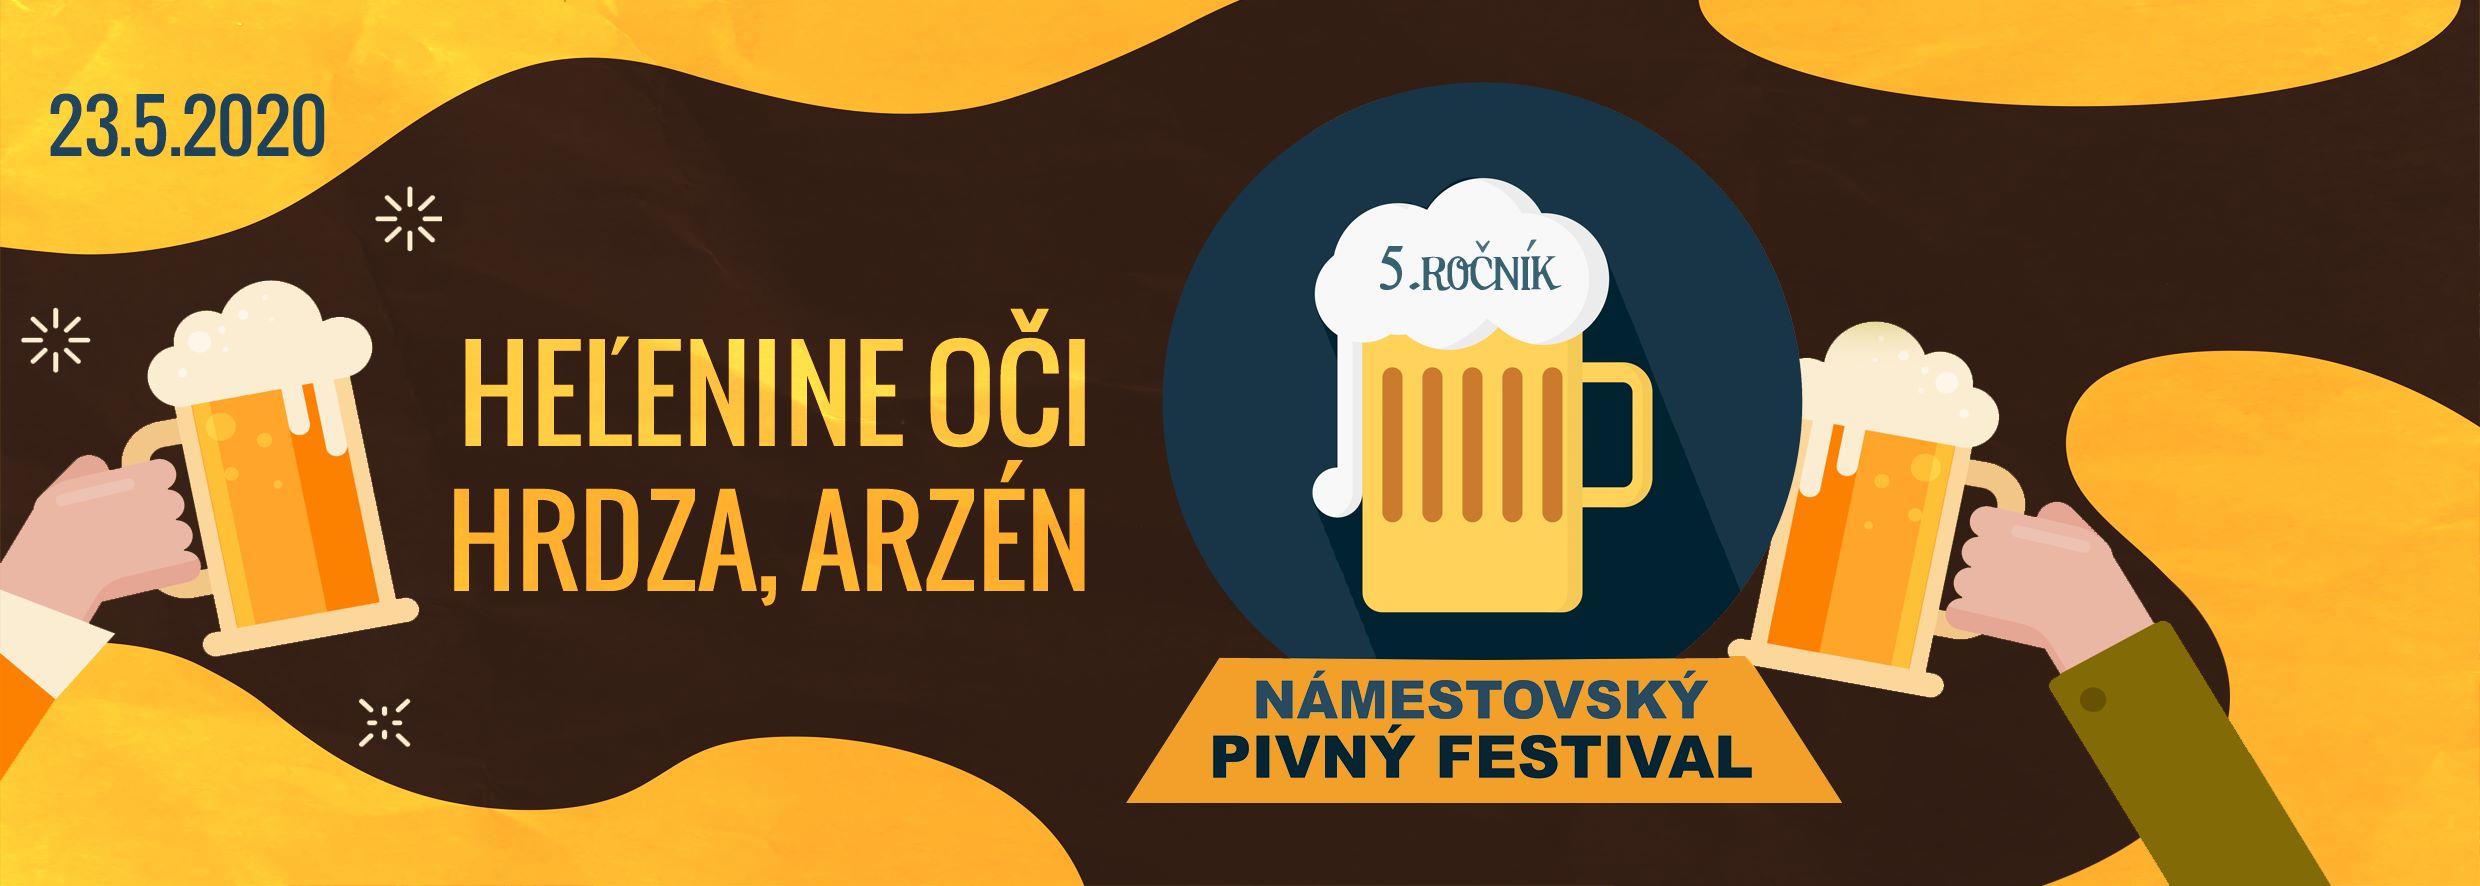 Námestovský Pivný Festival 2020 - 5. ročník